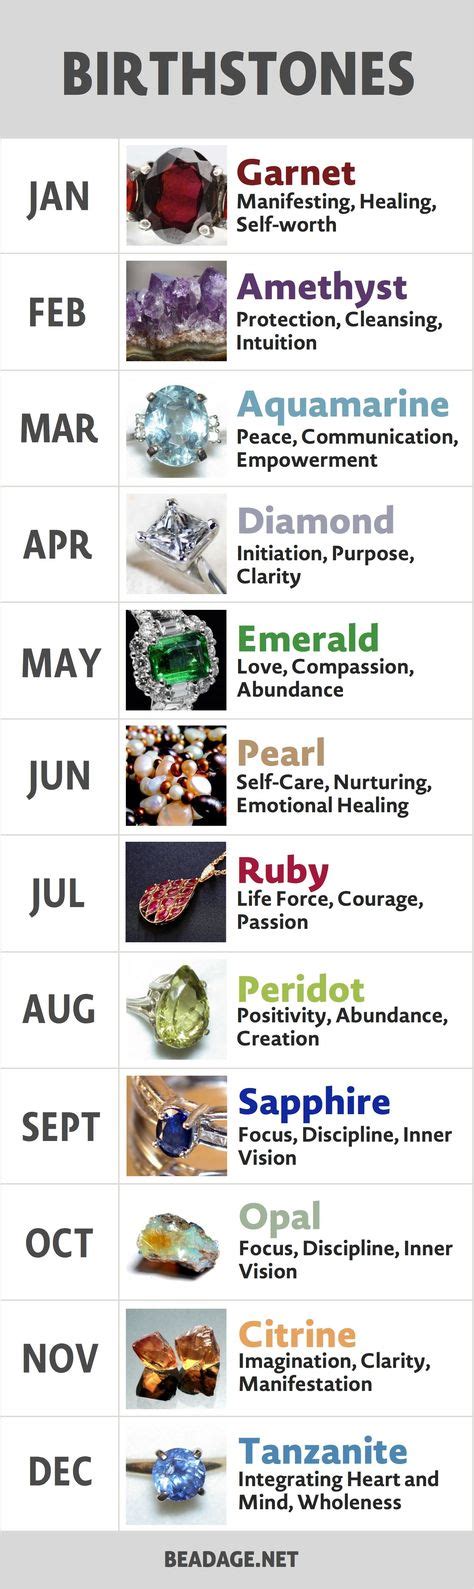 List Of Birthstones Gemstones By Month Birth Stones Chart Month